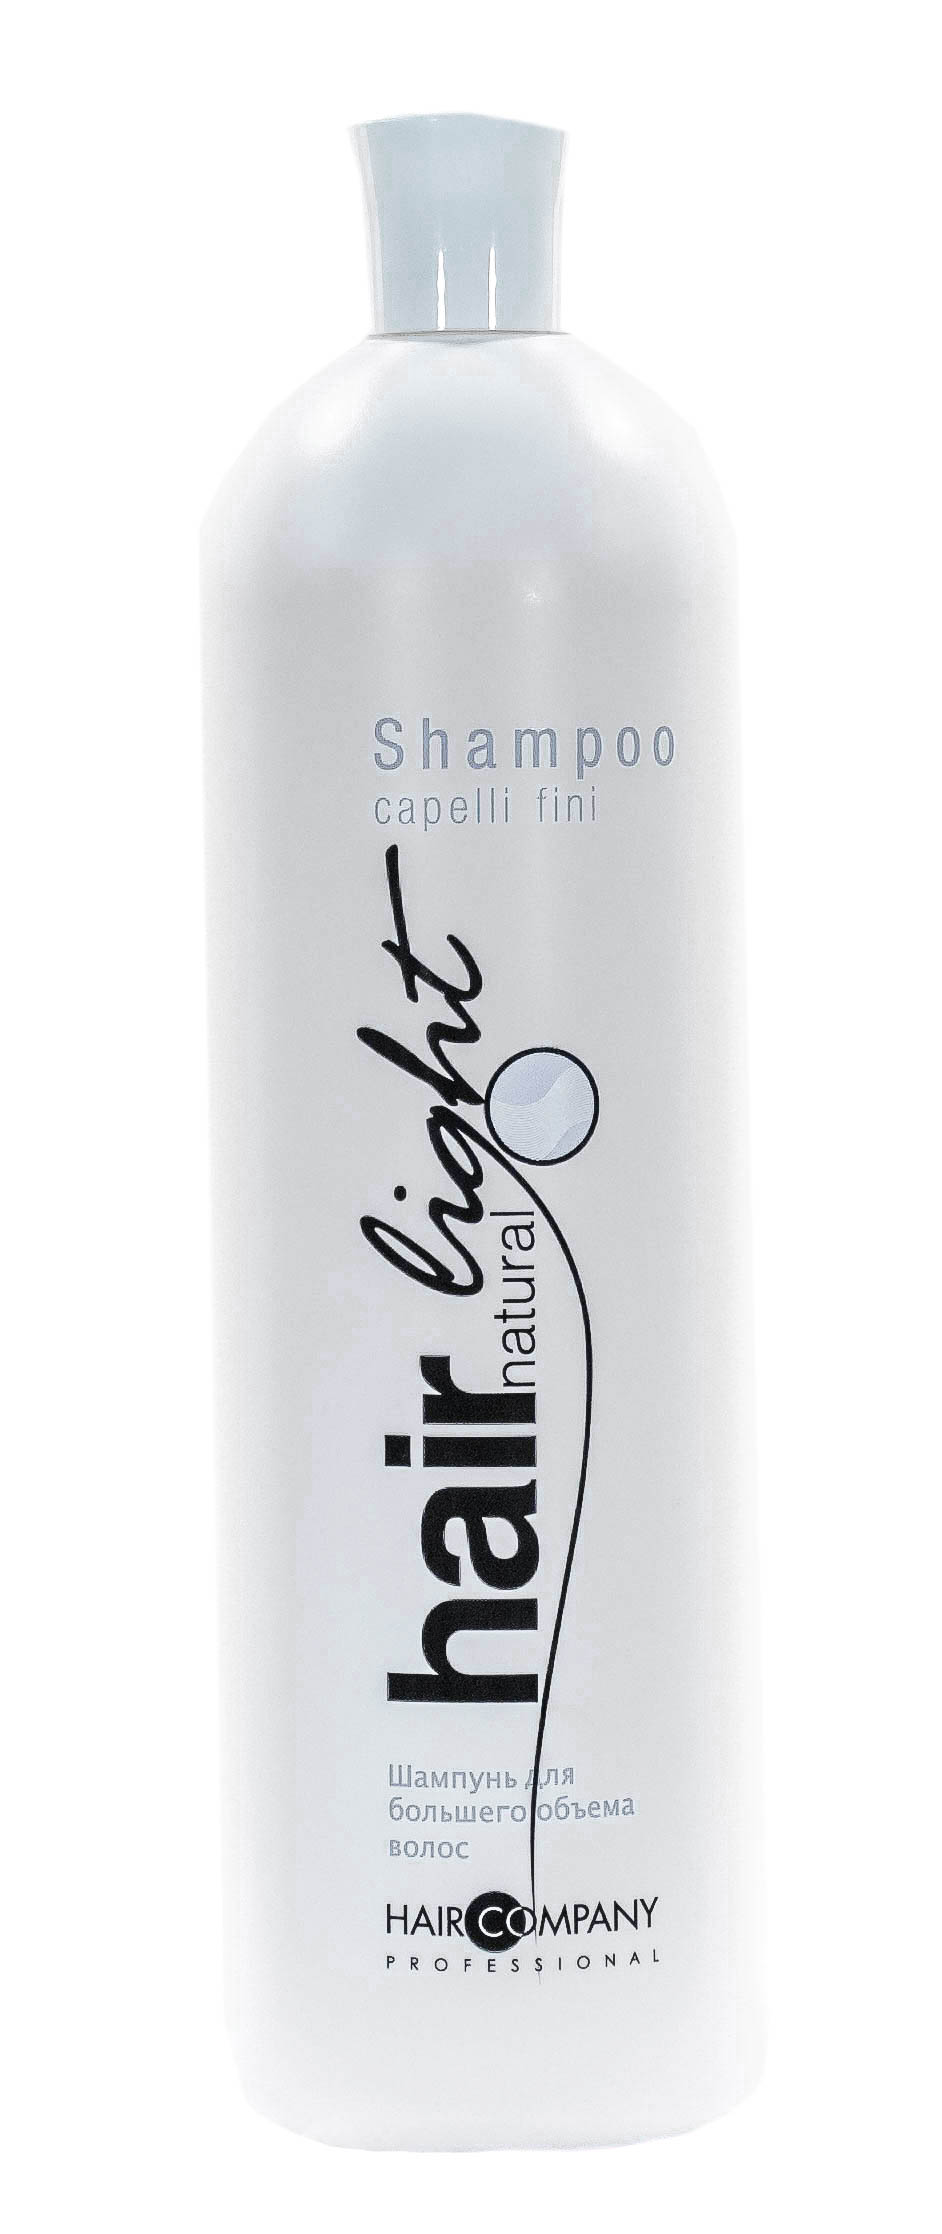 Купить Hair Company Professional Шампунь для большего объема волос Capelli Fini, 1000 мл (Hair Company Professional, Hair Light)